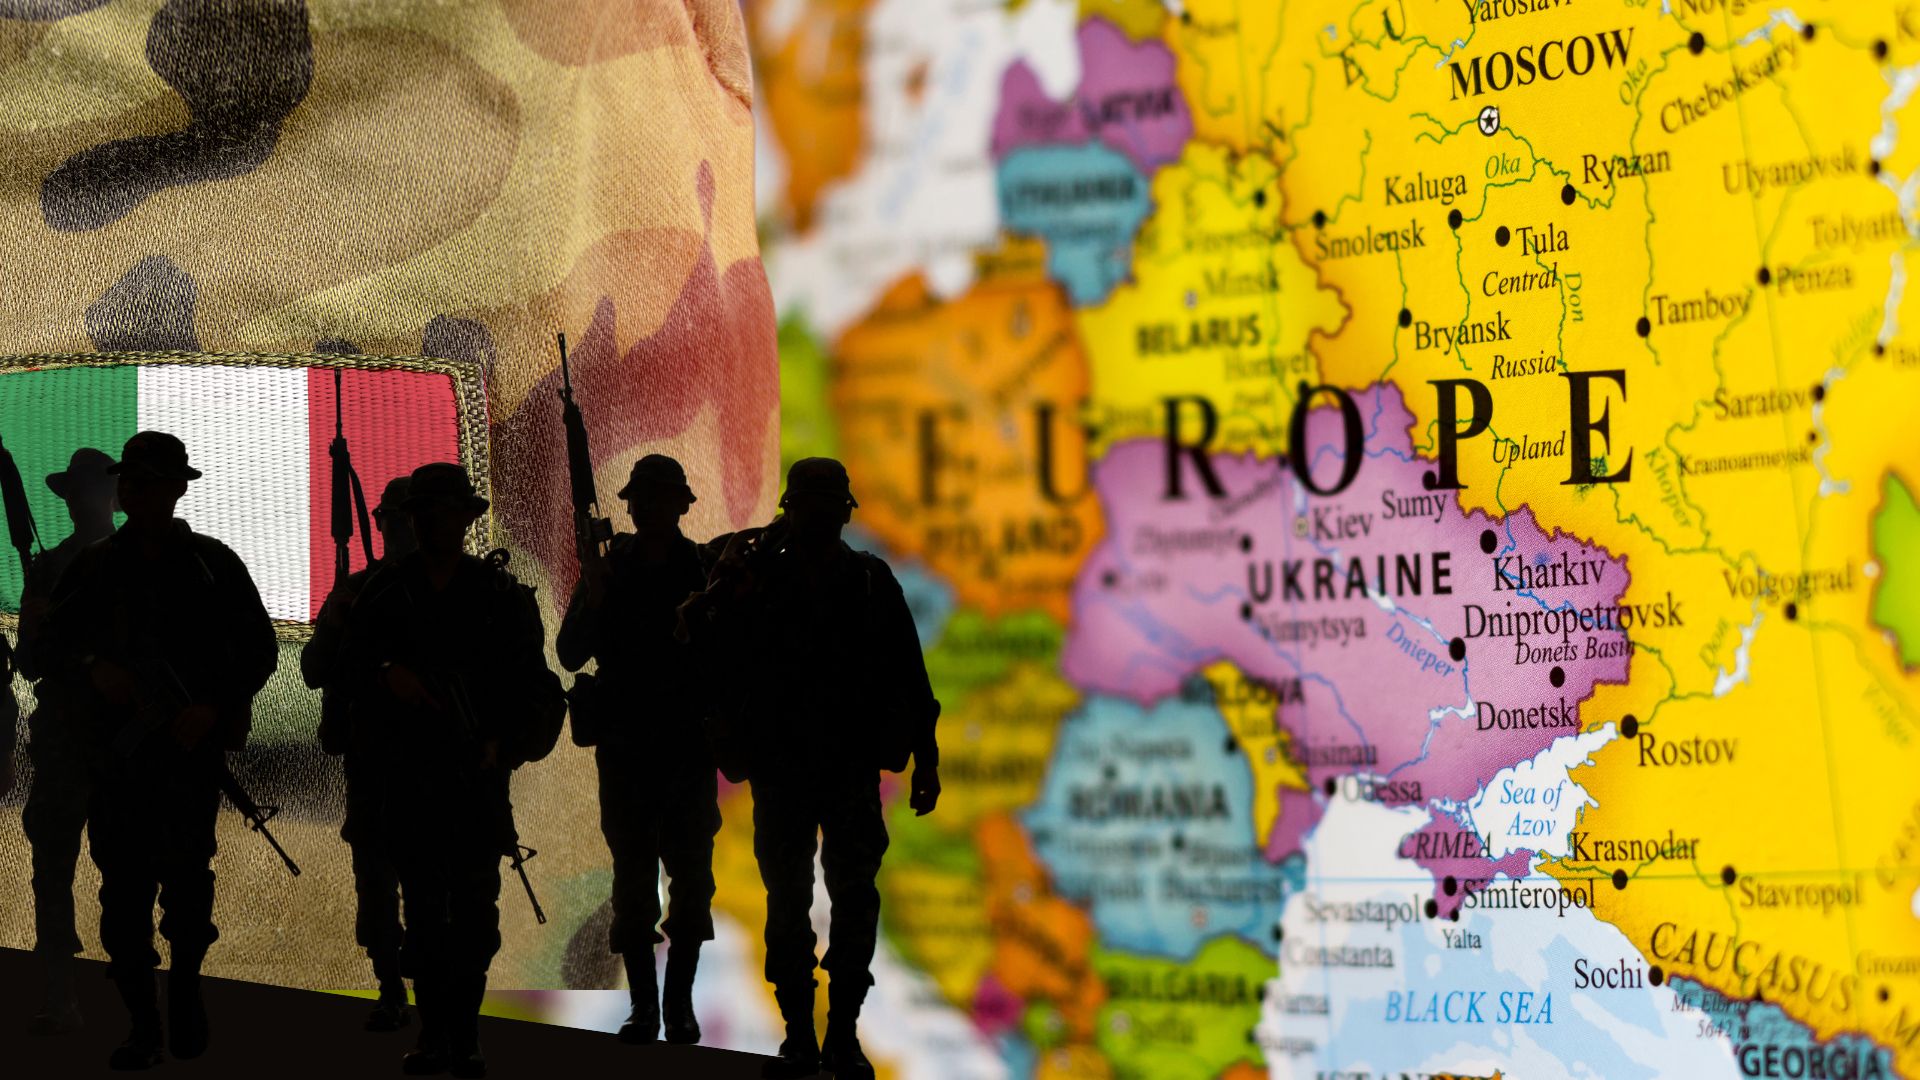 Presidiare il fianco Est: ecco i nostri militari schierati verso l’Ucraina